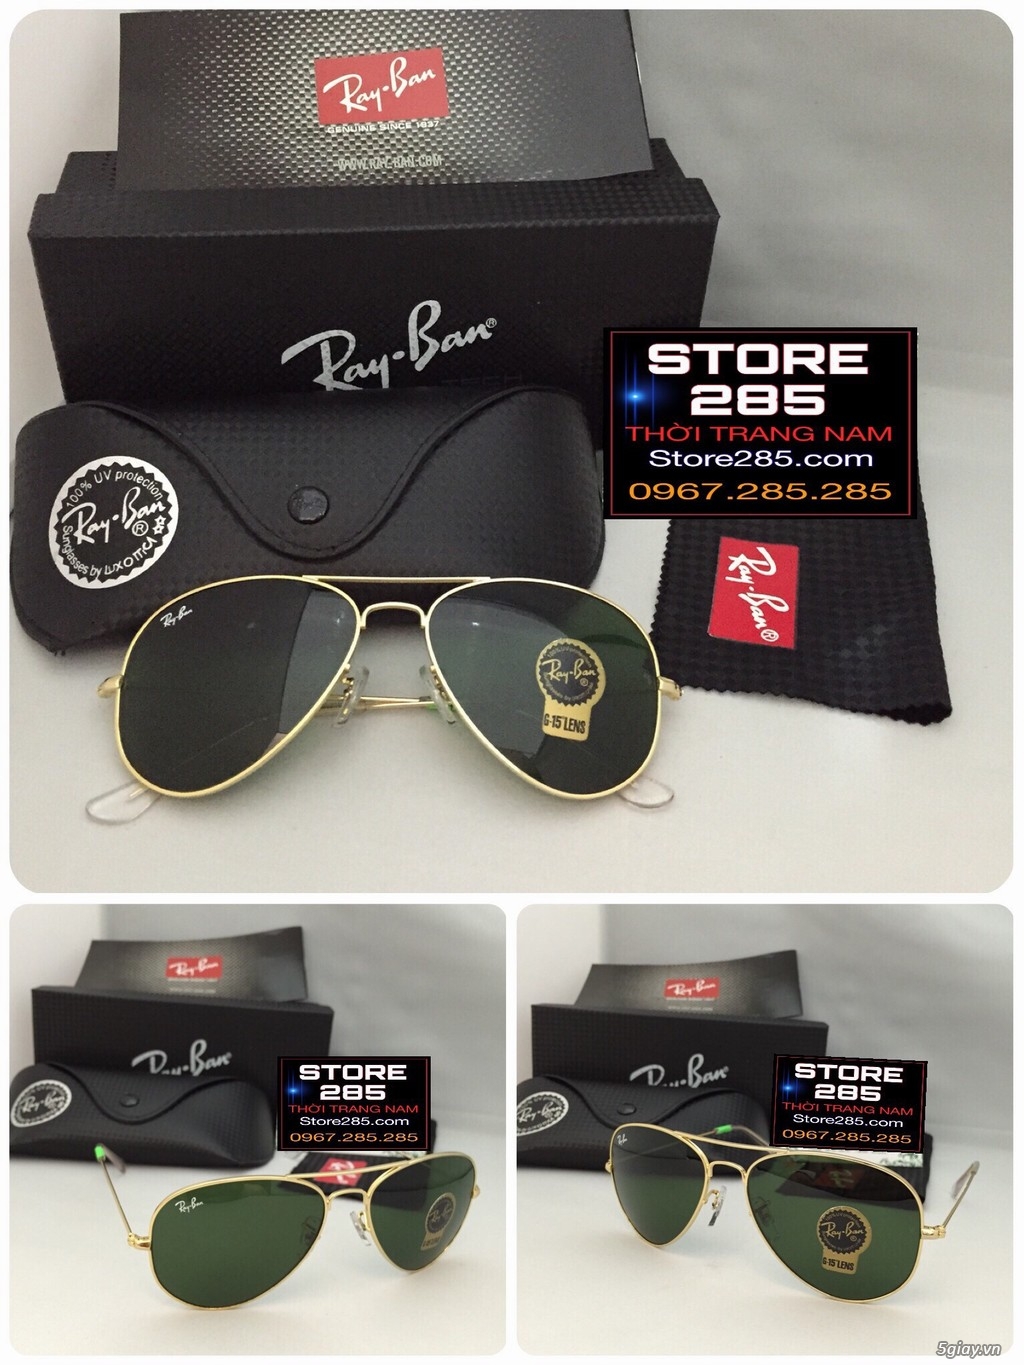 Shop285 Giá tốt 5giay: Chuyên mắt kính Rayban,thắt lưng,bóp da,Hàng XT USA,Sing,HK - 17